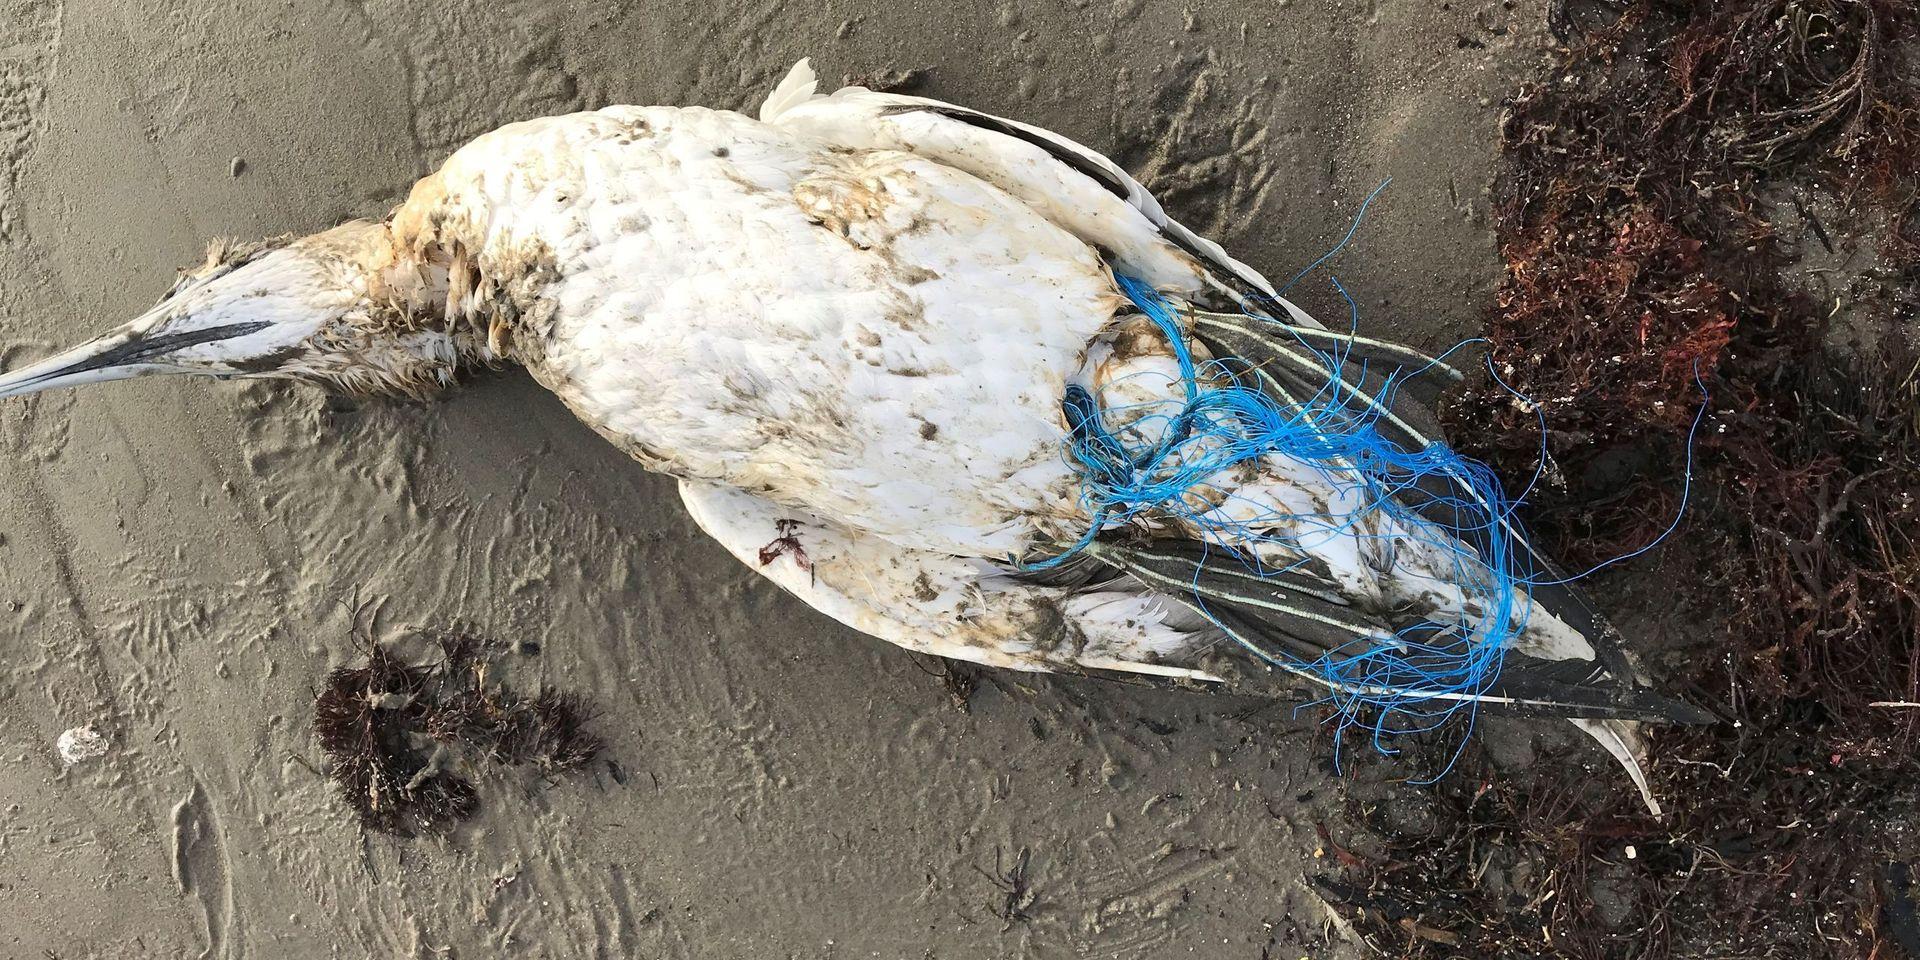 Fågeln låg intrasslad i ett plastnät.